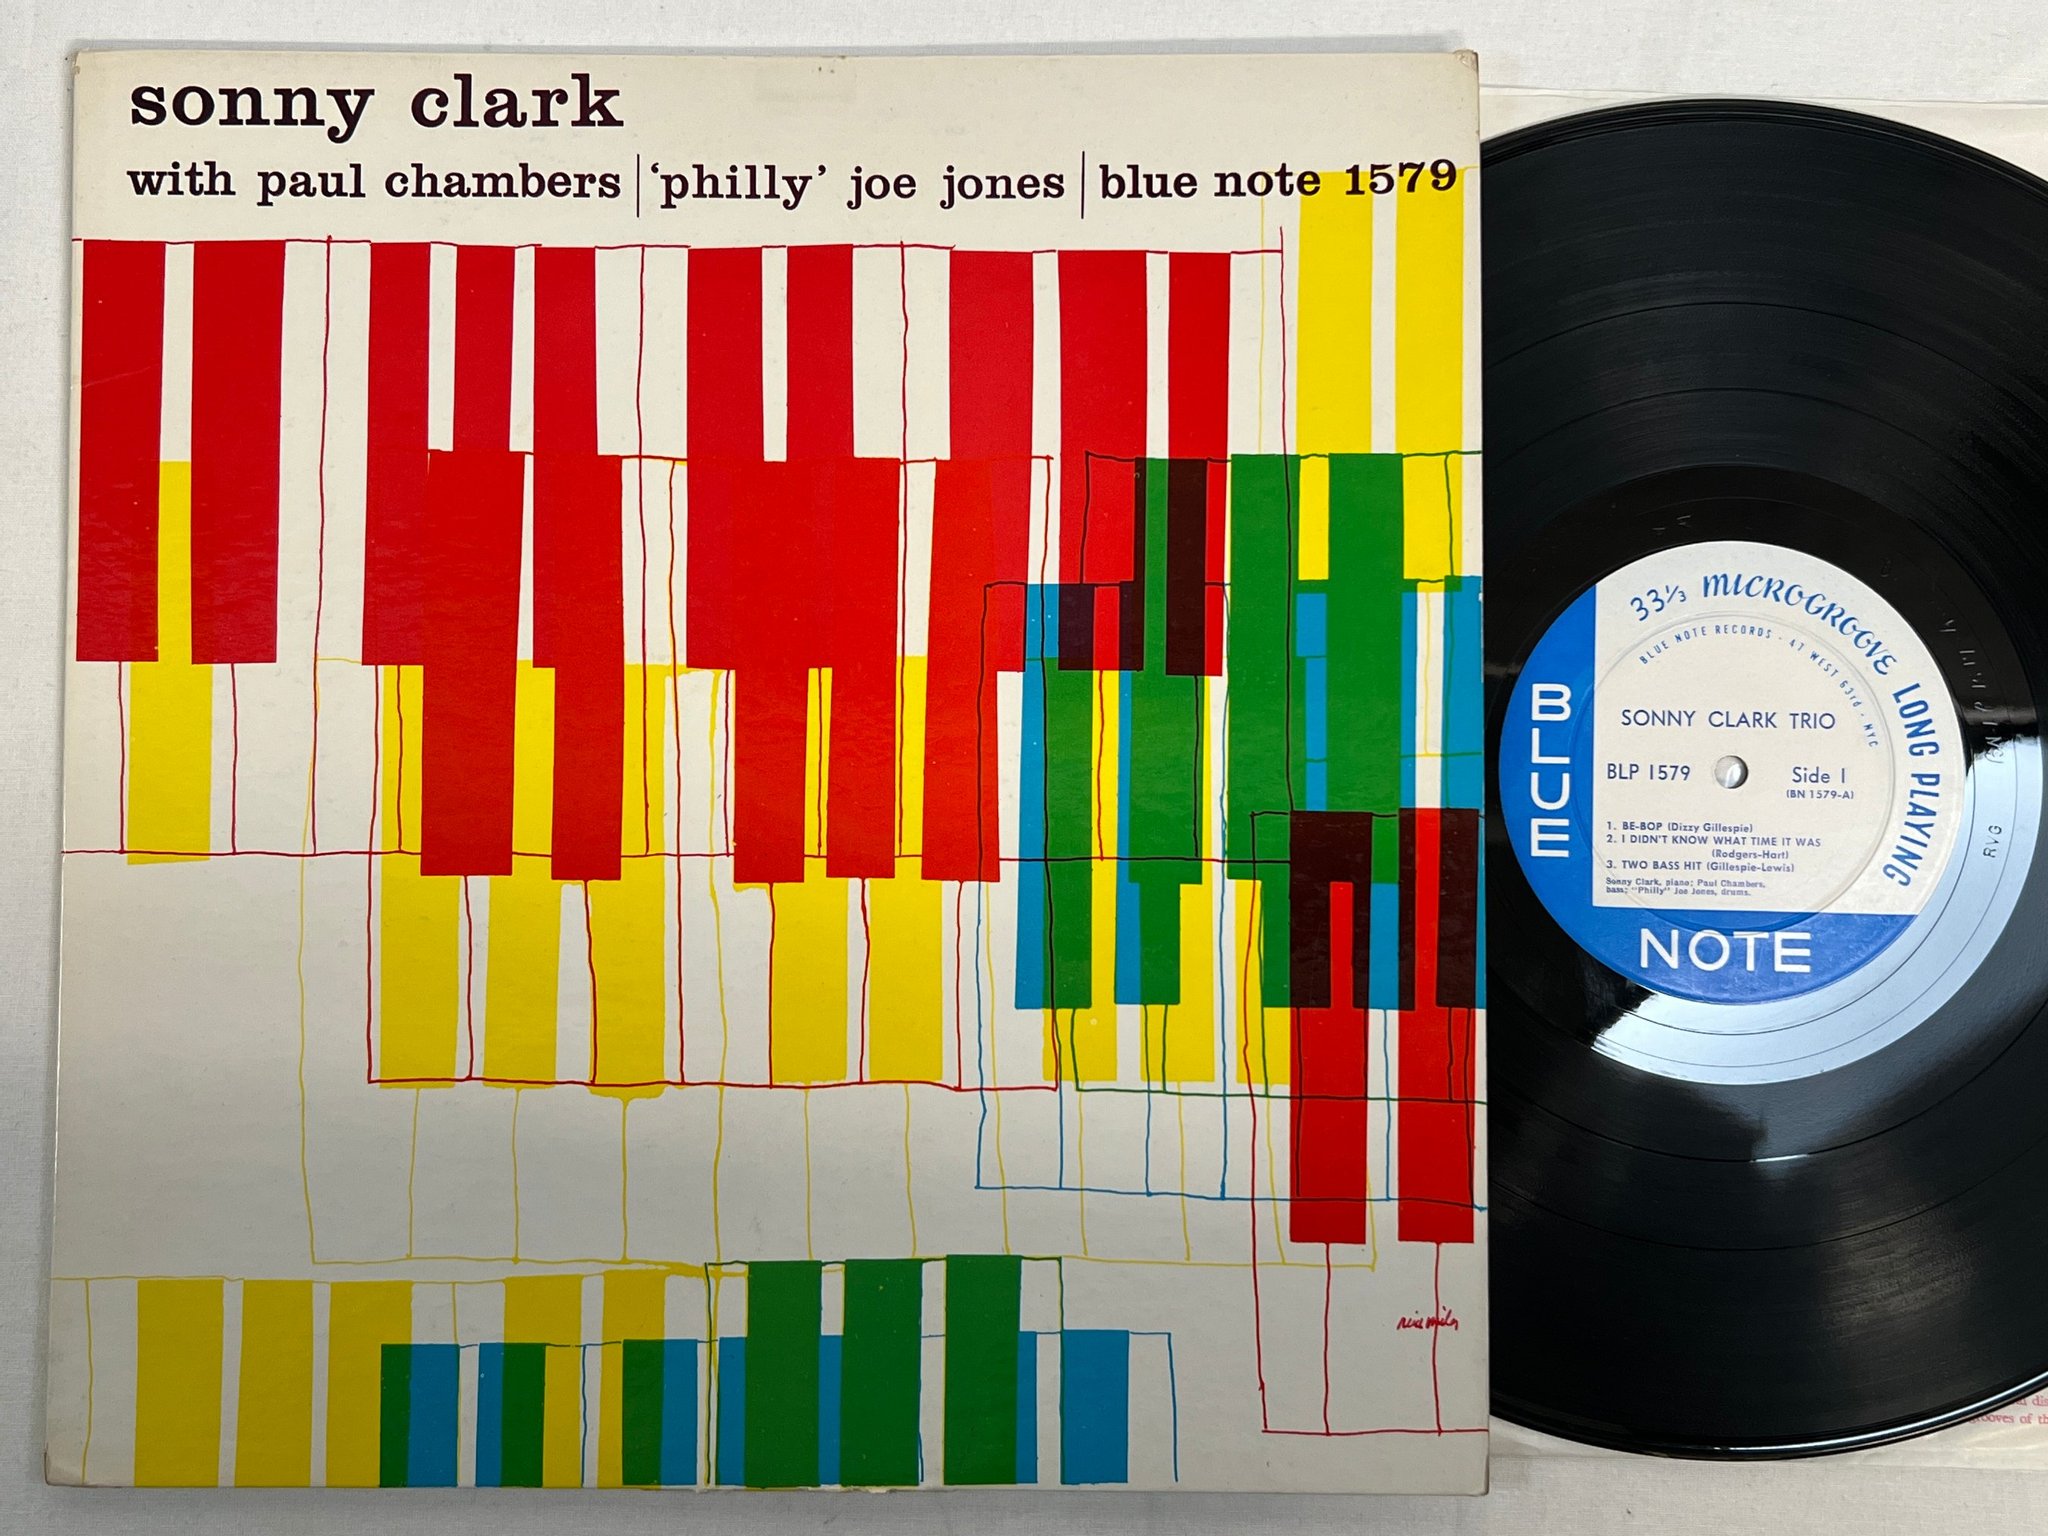 Omslagsbild för skivan SONNY CLARK TRIO s/t LP -58 US BLUE NOTE BLP 1579 ***** mega rare ***** 